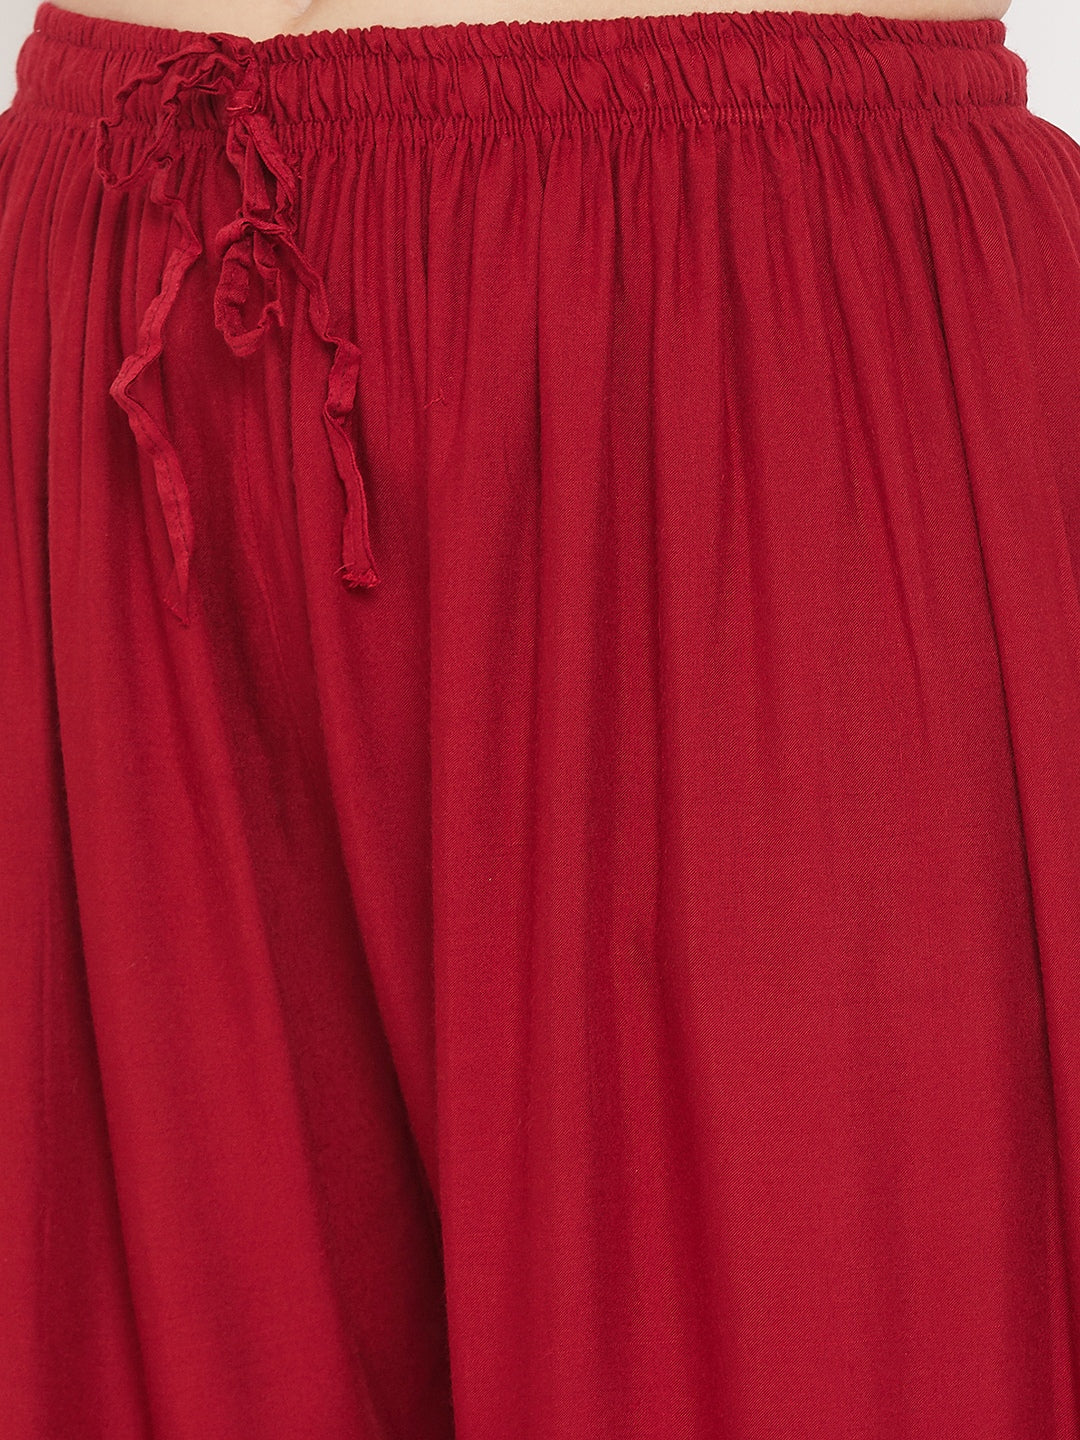 Clora Red Printed Rayon Palazzo